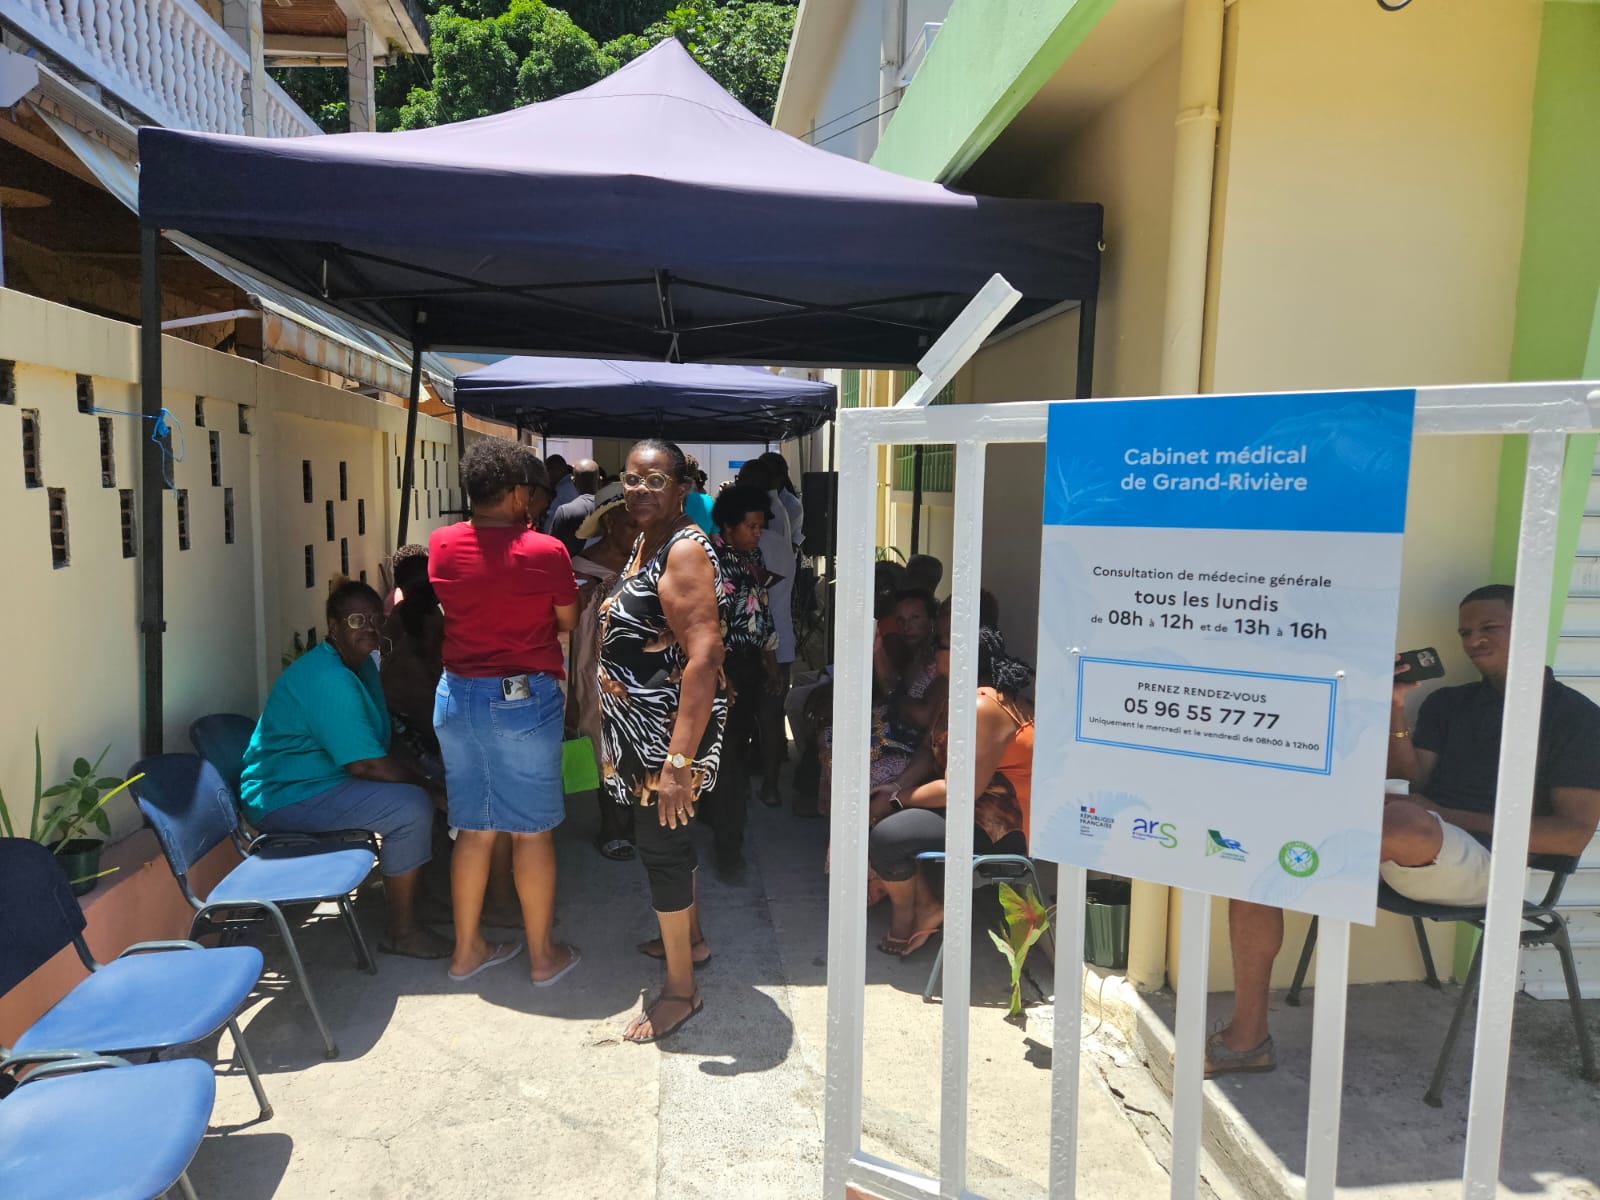     Au bout de la Martinique, la commune de Grand-Rivière a désormais son cabinet médical 

